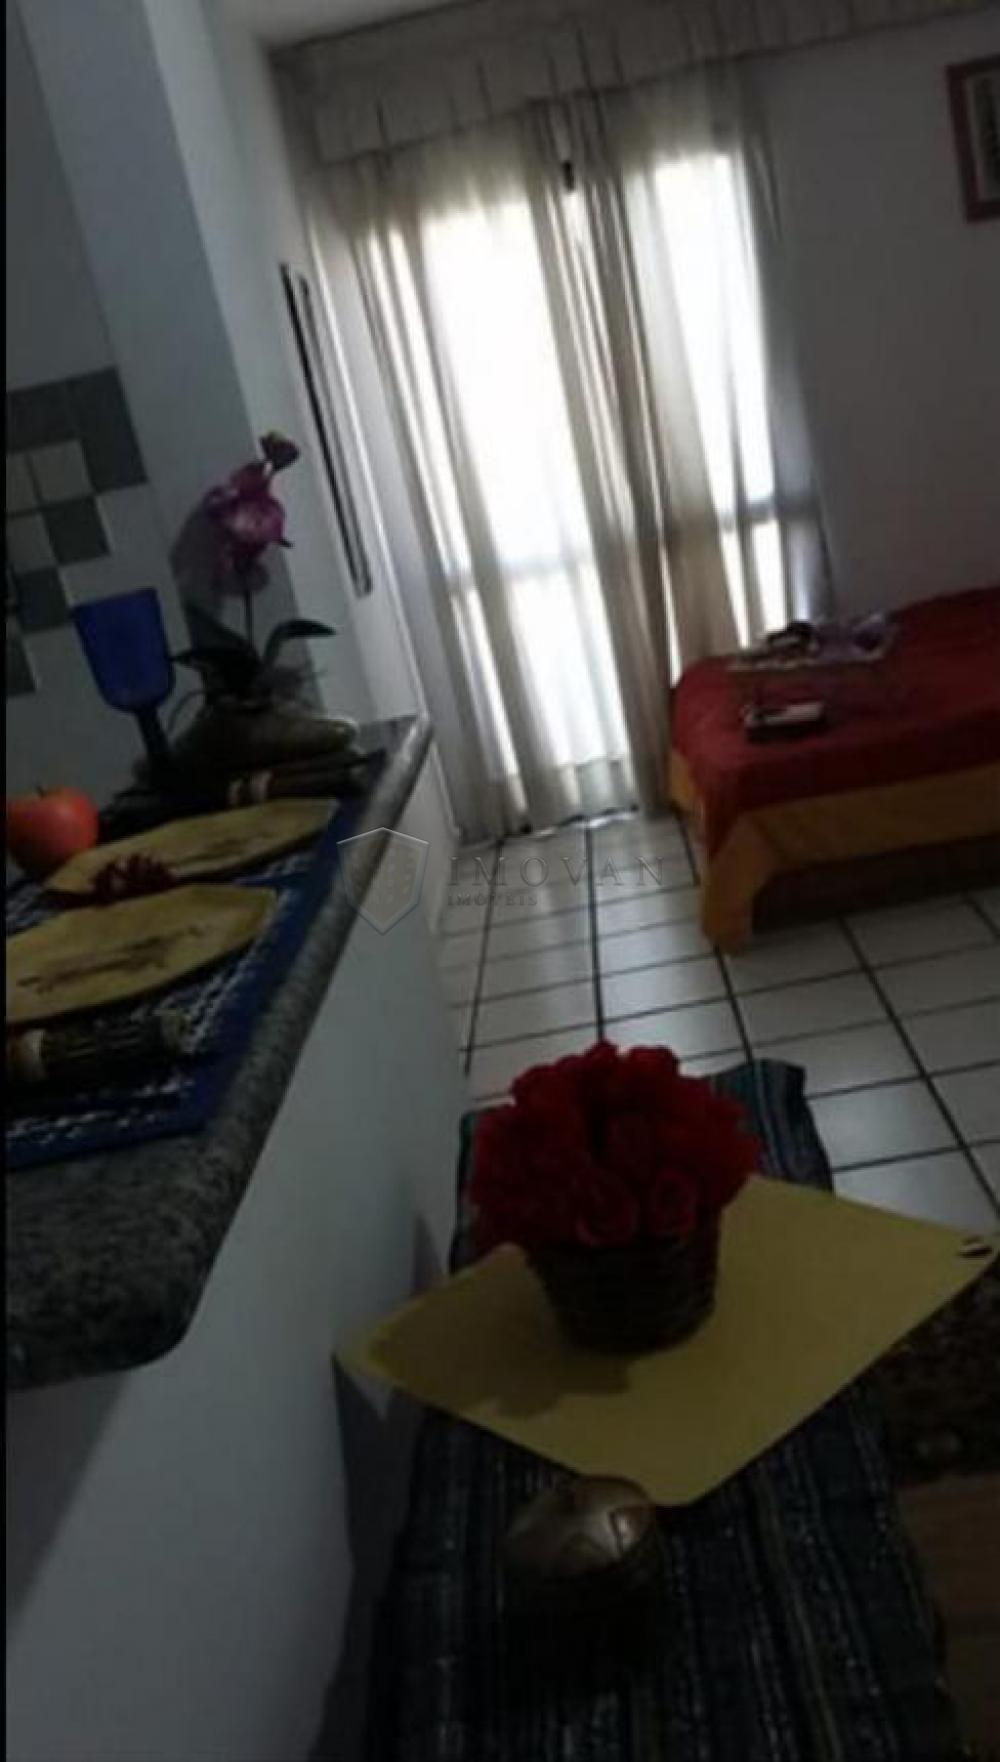 Comprar Apartamento / Kitchnet em Ribeirão Preto R$ 159.000,00 - Foto 3